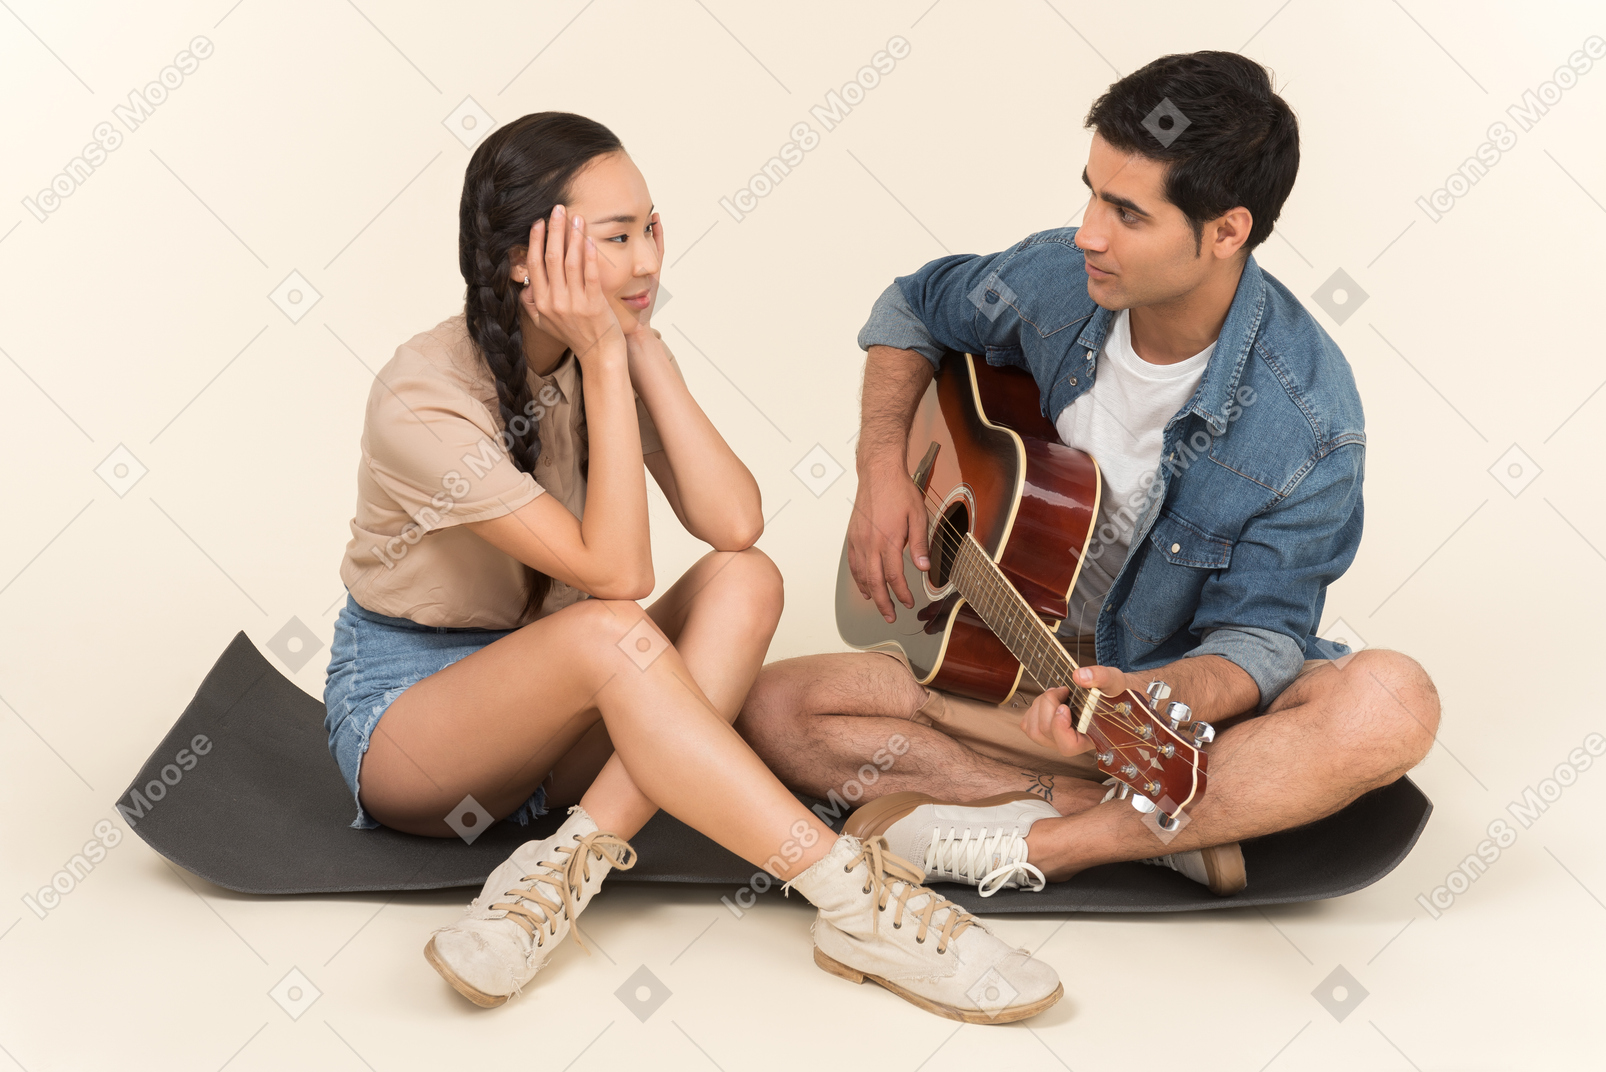 Jovem cara caucasiana tocando violão sentado perto de mulher asiática no karimat